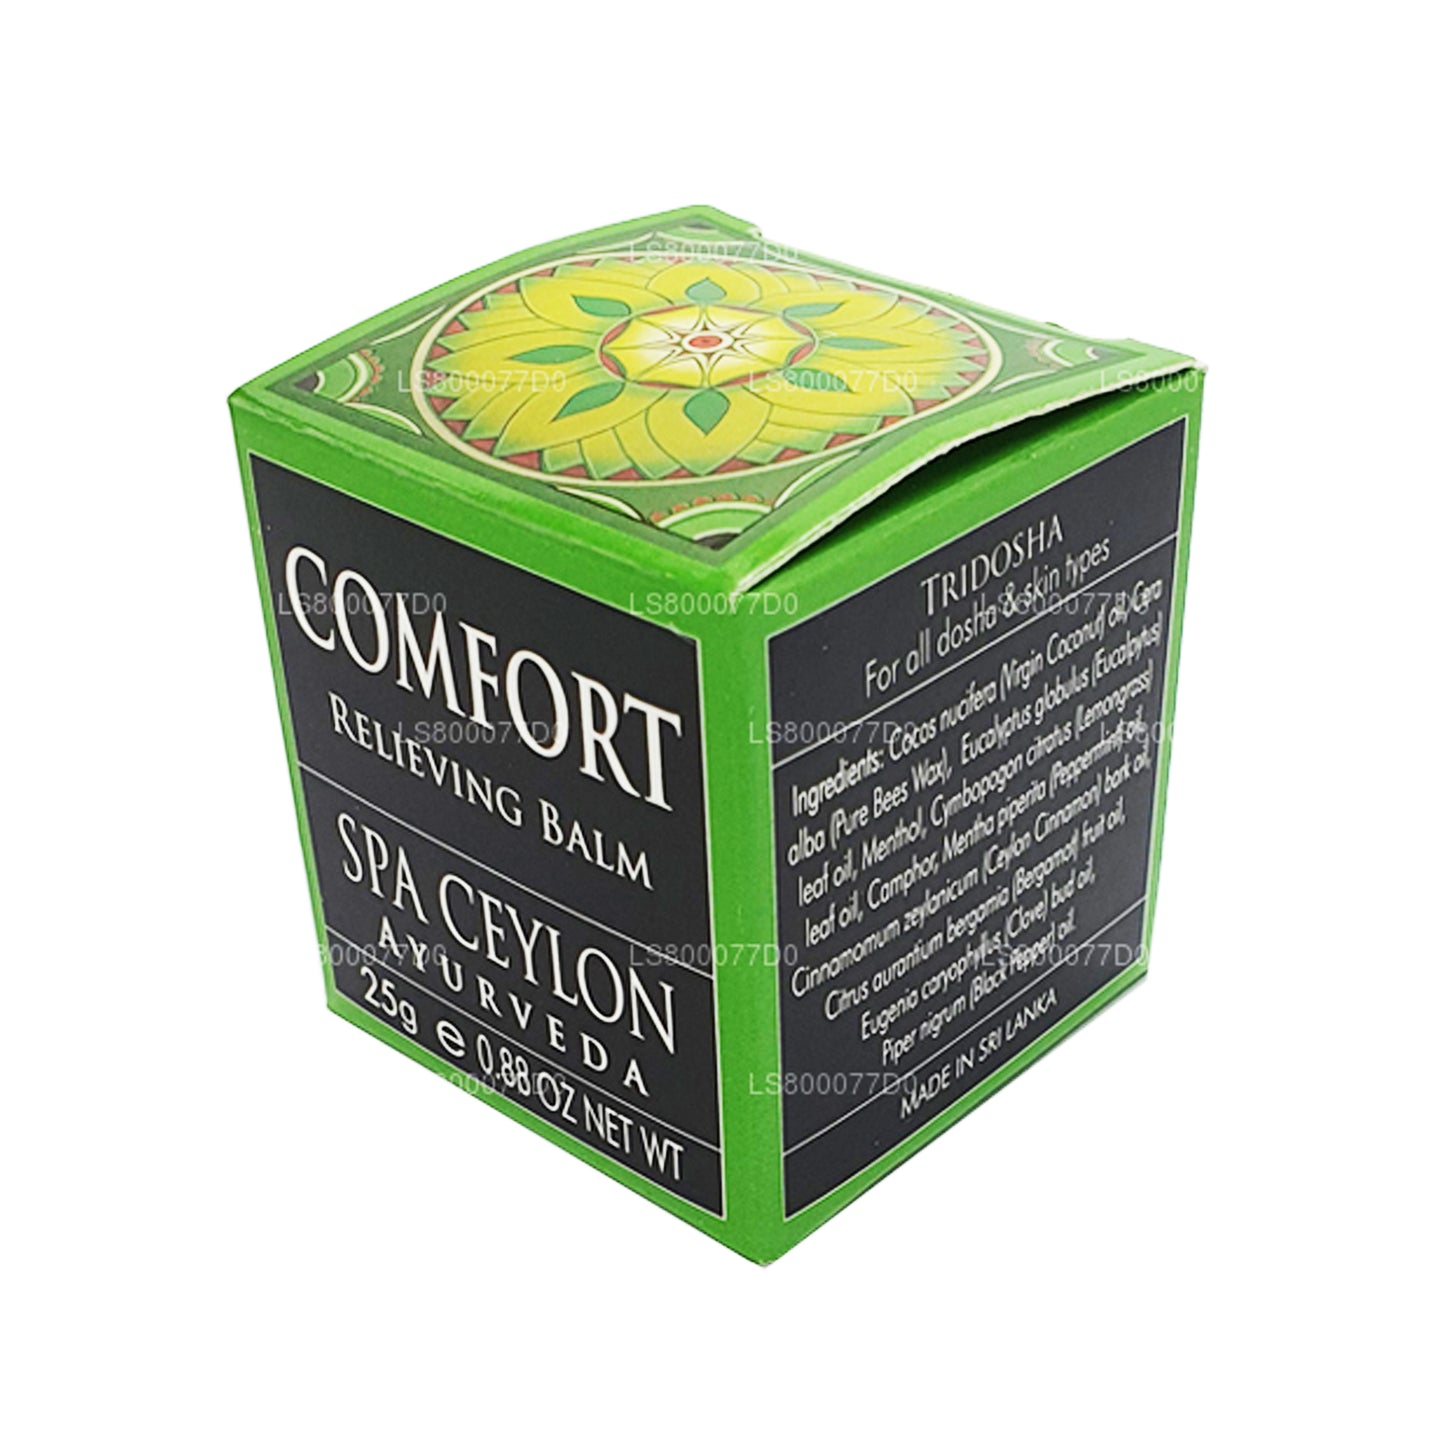 Bálsamo calmante Spa Ceylon Comfort (25 g)